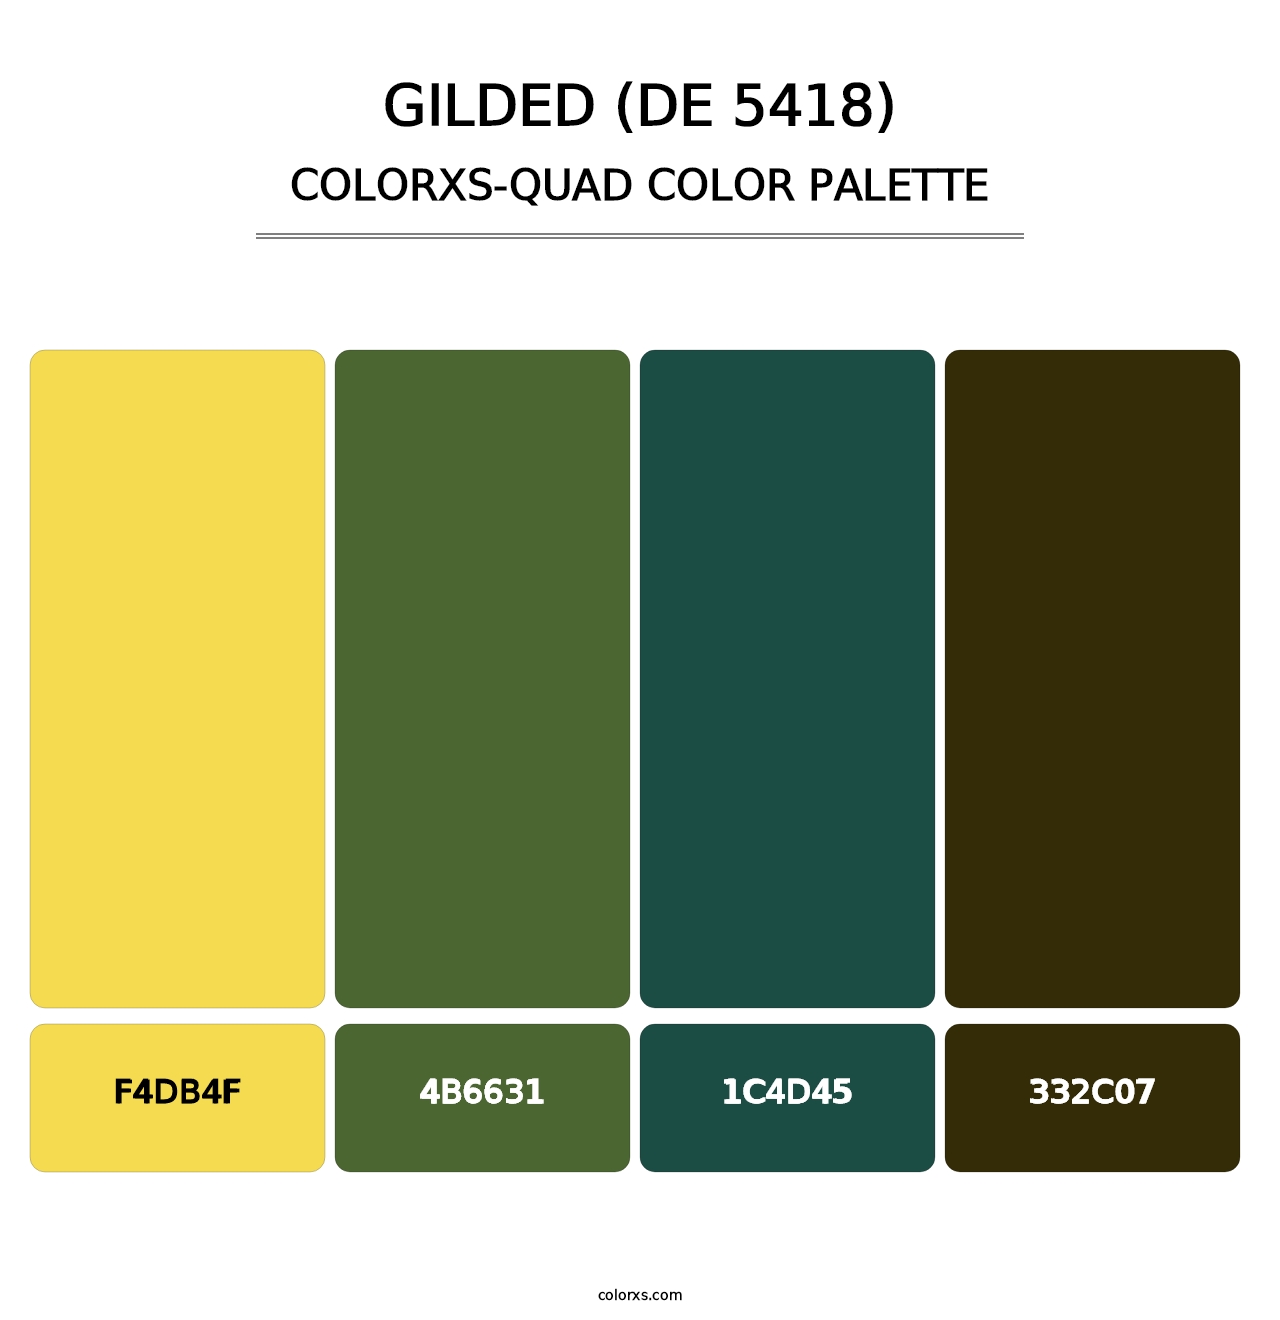 Gilded (DE 5418) - Colorxs Quad Palette